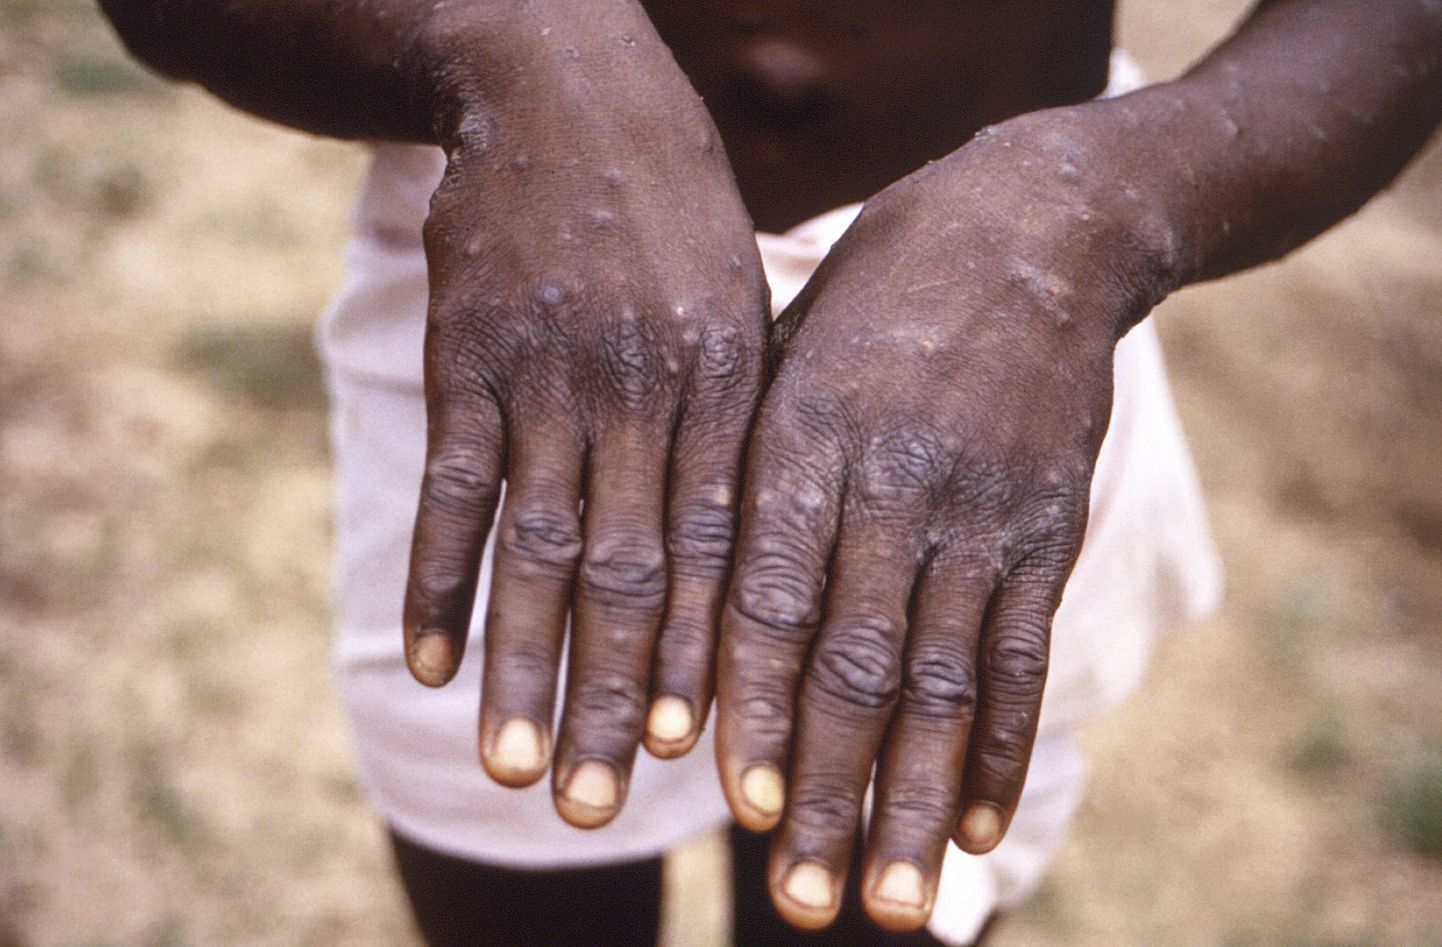 Ahvirõuged. Foto on tehtud 1997 Kongo Demokraatlikus Vabariigis, kus oli selle haiguse puhang